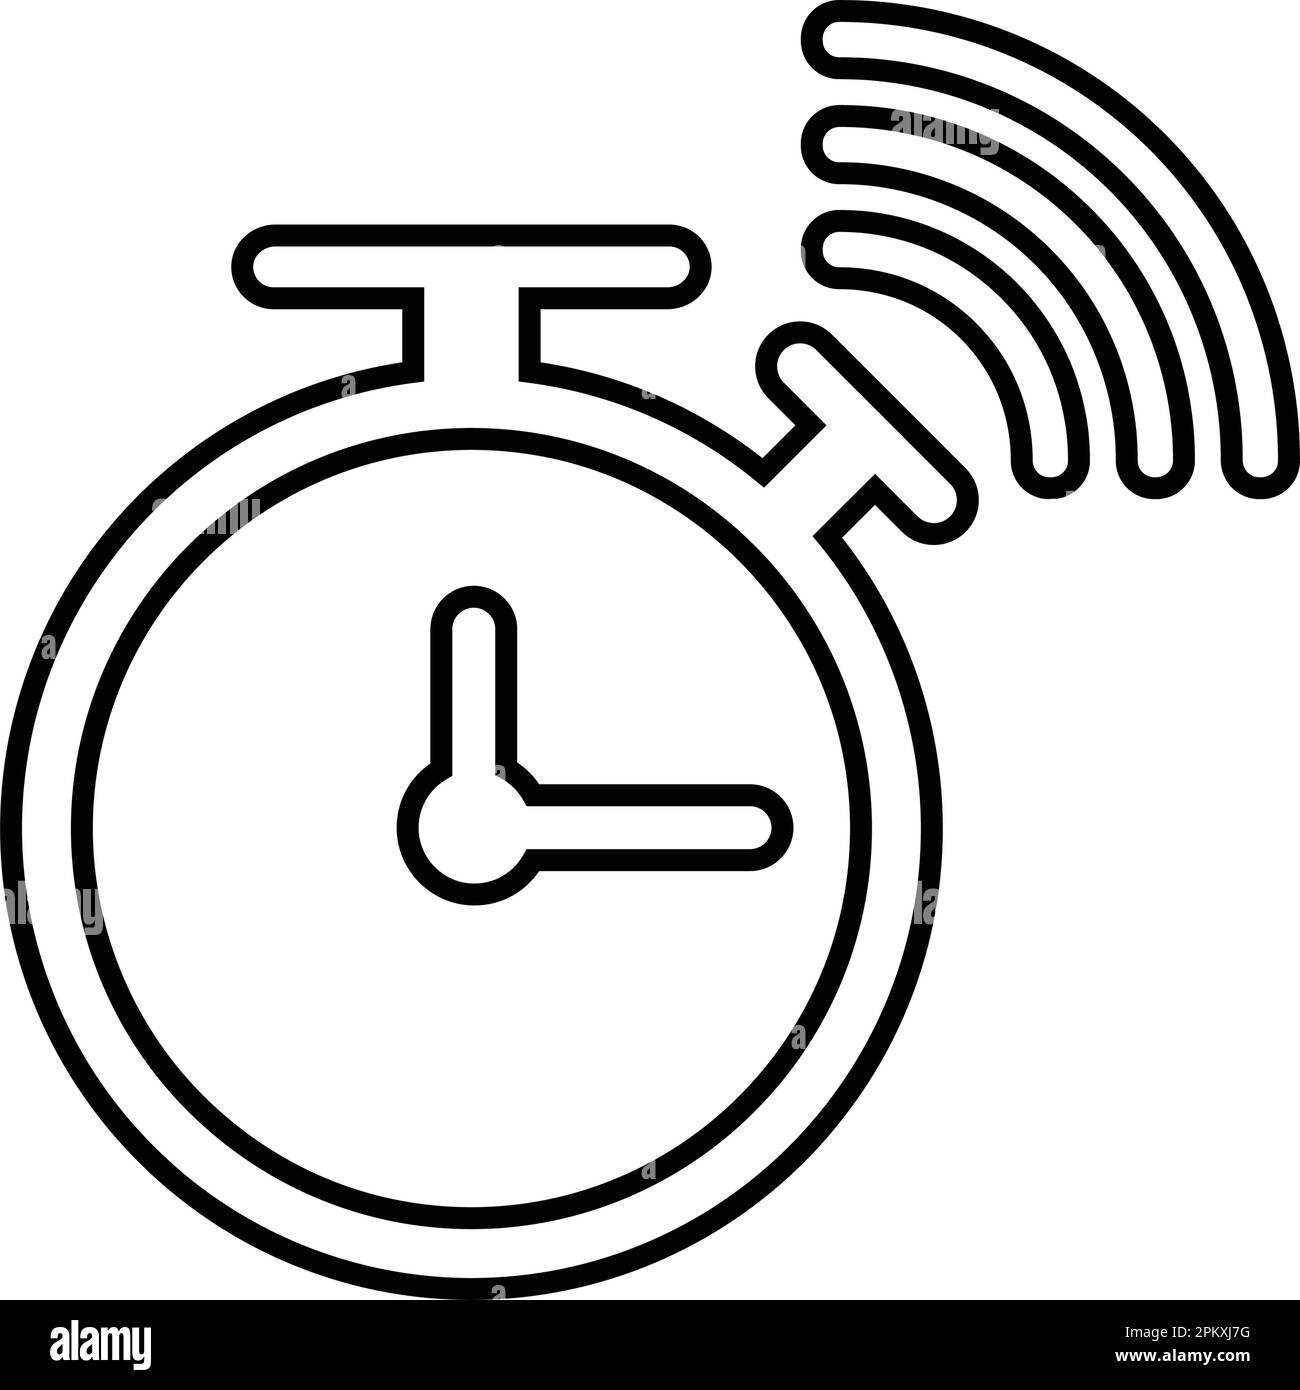 Wecker, Glockensymbol ist auf weißem Hintergrund isoliert. Verwendung für Grafik- und Webdesign oder kommerzielle Zwecke. Vektor-EPS-Datei. Stock Vektor